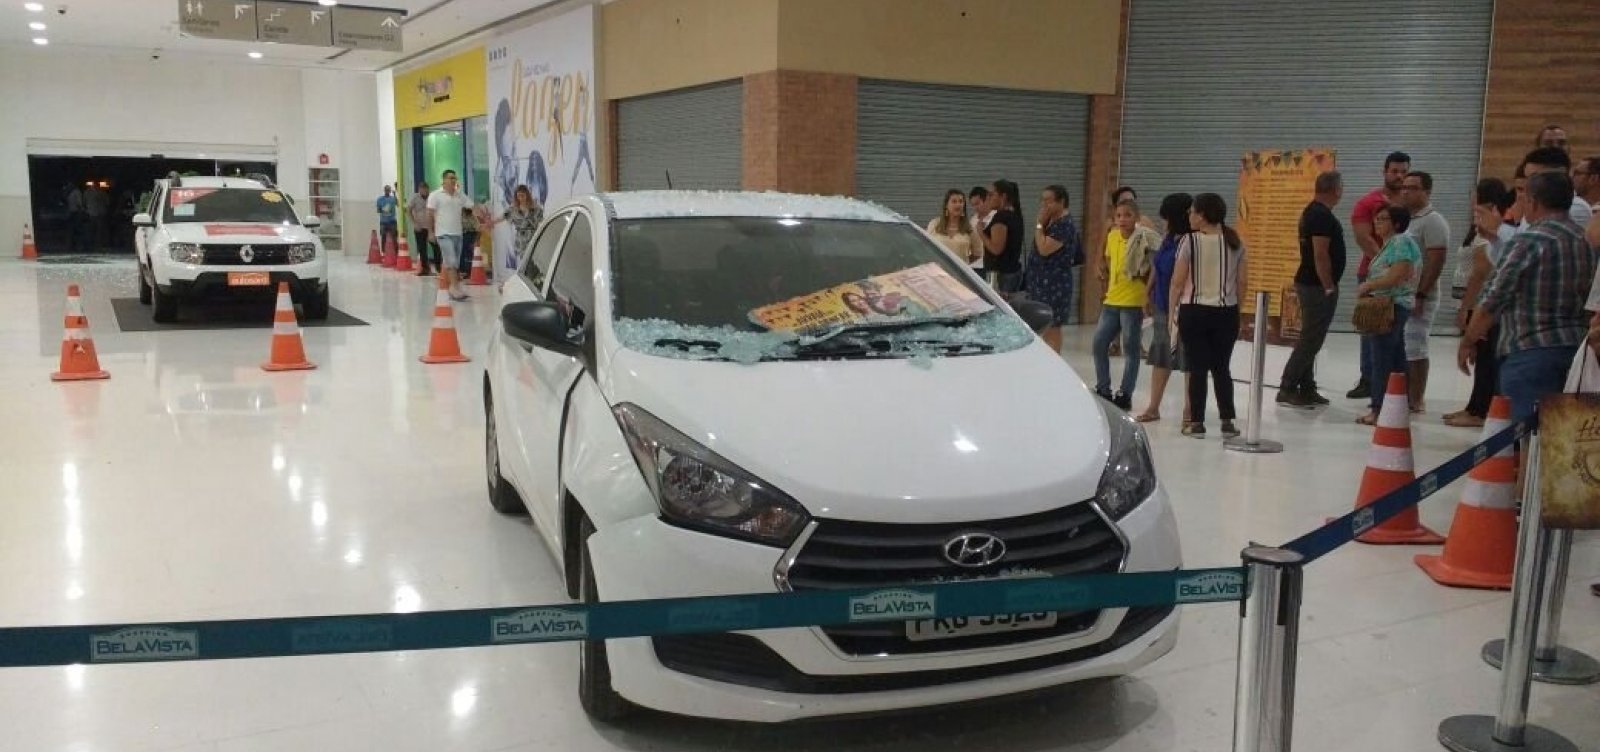 Cliente invade shopping com veículo para escapar de assalto; fotos